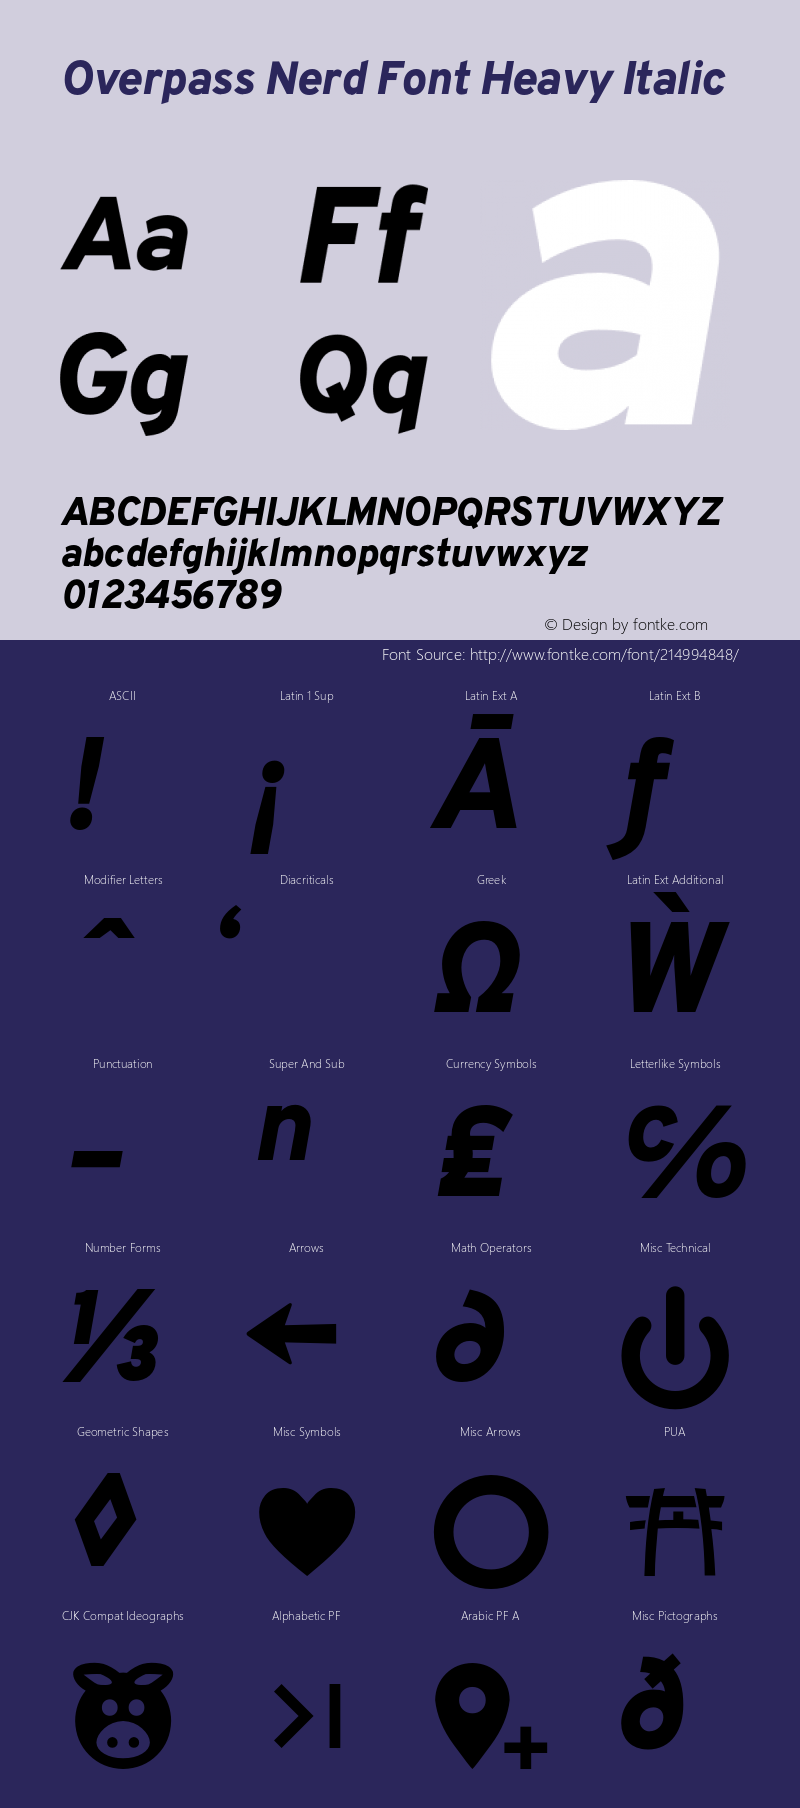 Overpass Heavy Italic Nerd Font Complete Version 003.000;Nerd Fonts 2.1.0图片样张